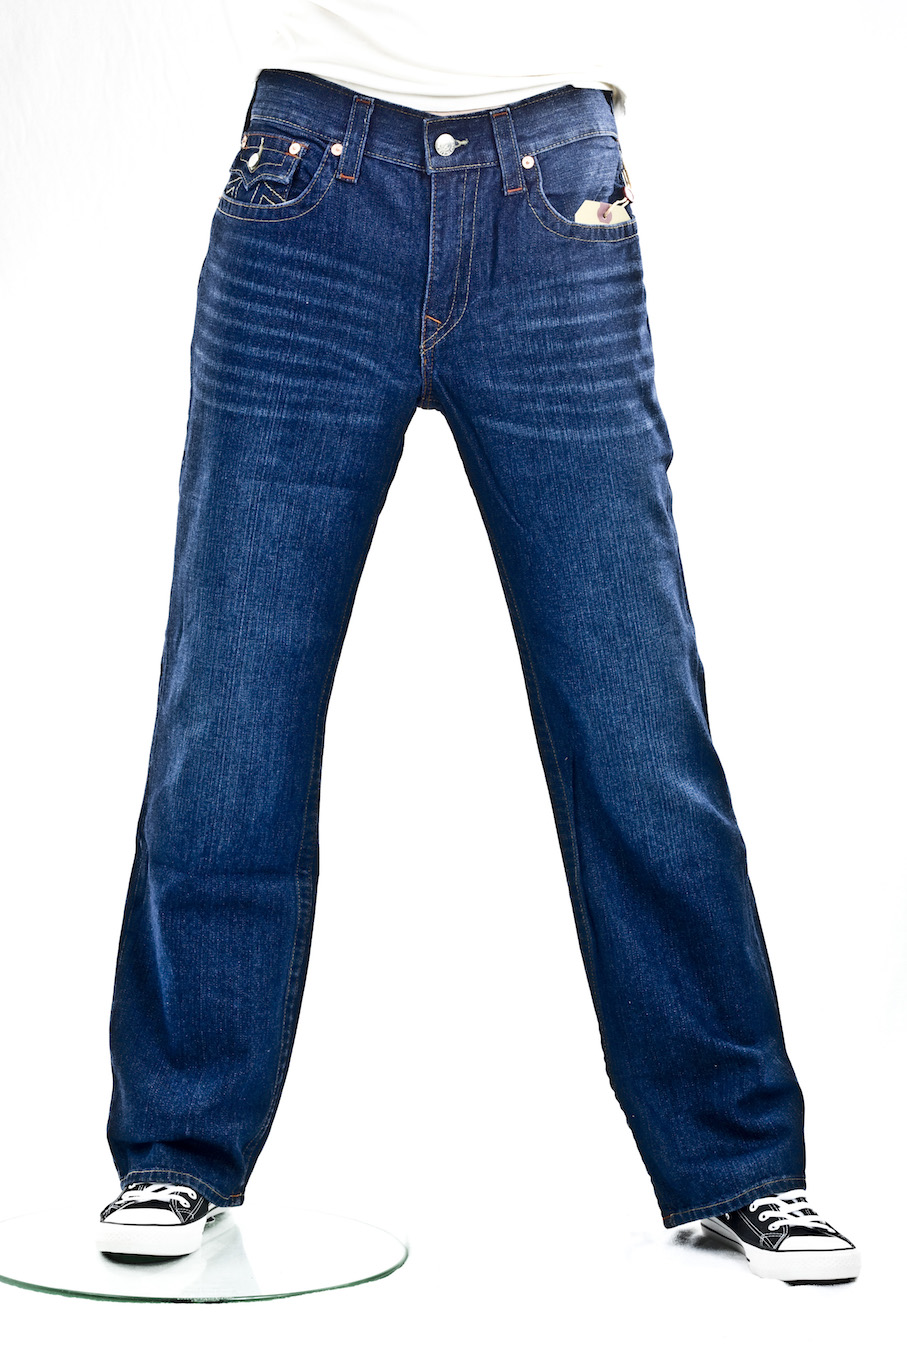 джинсы мужские True Religion широкие Ricky core straight 